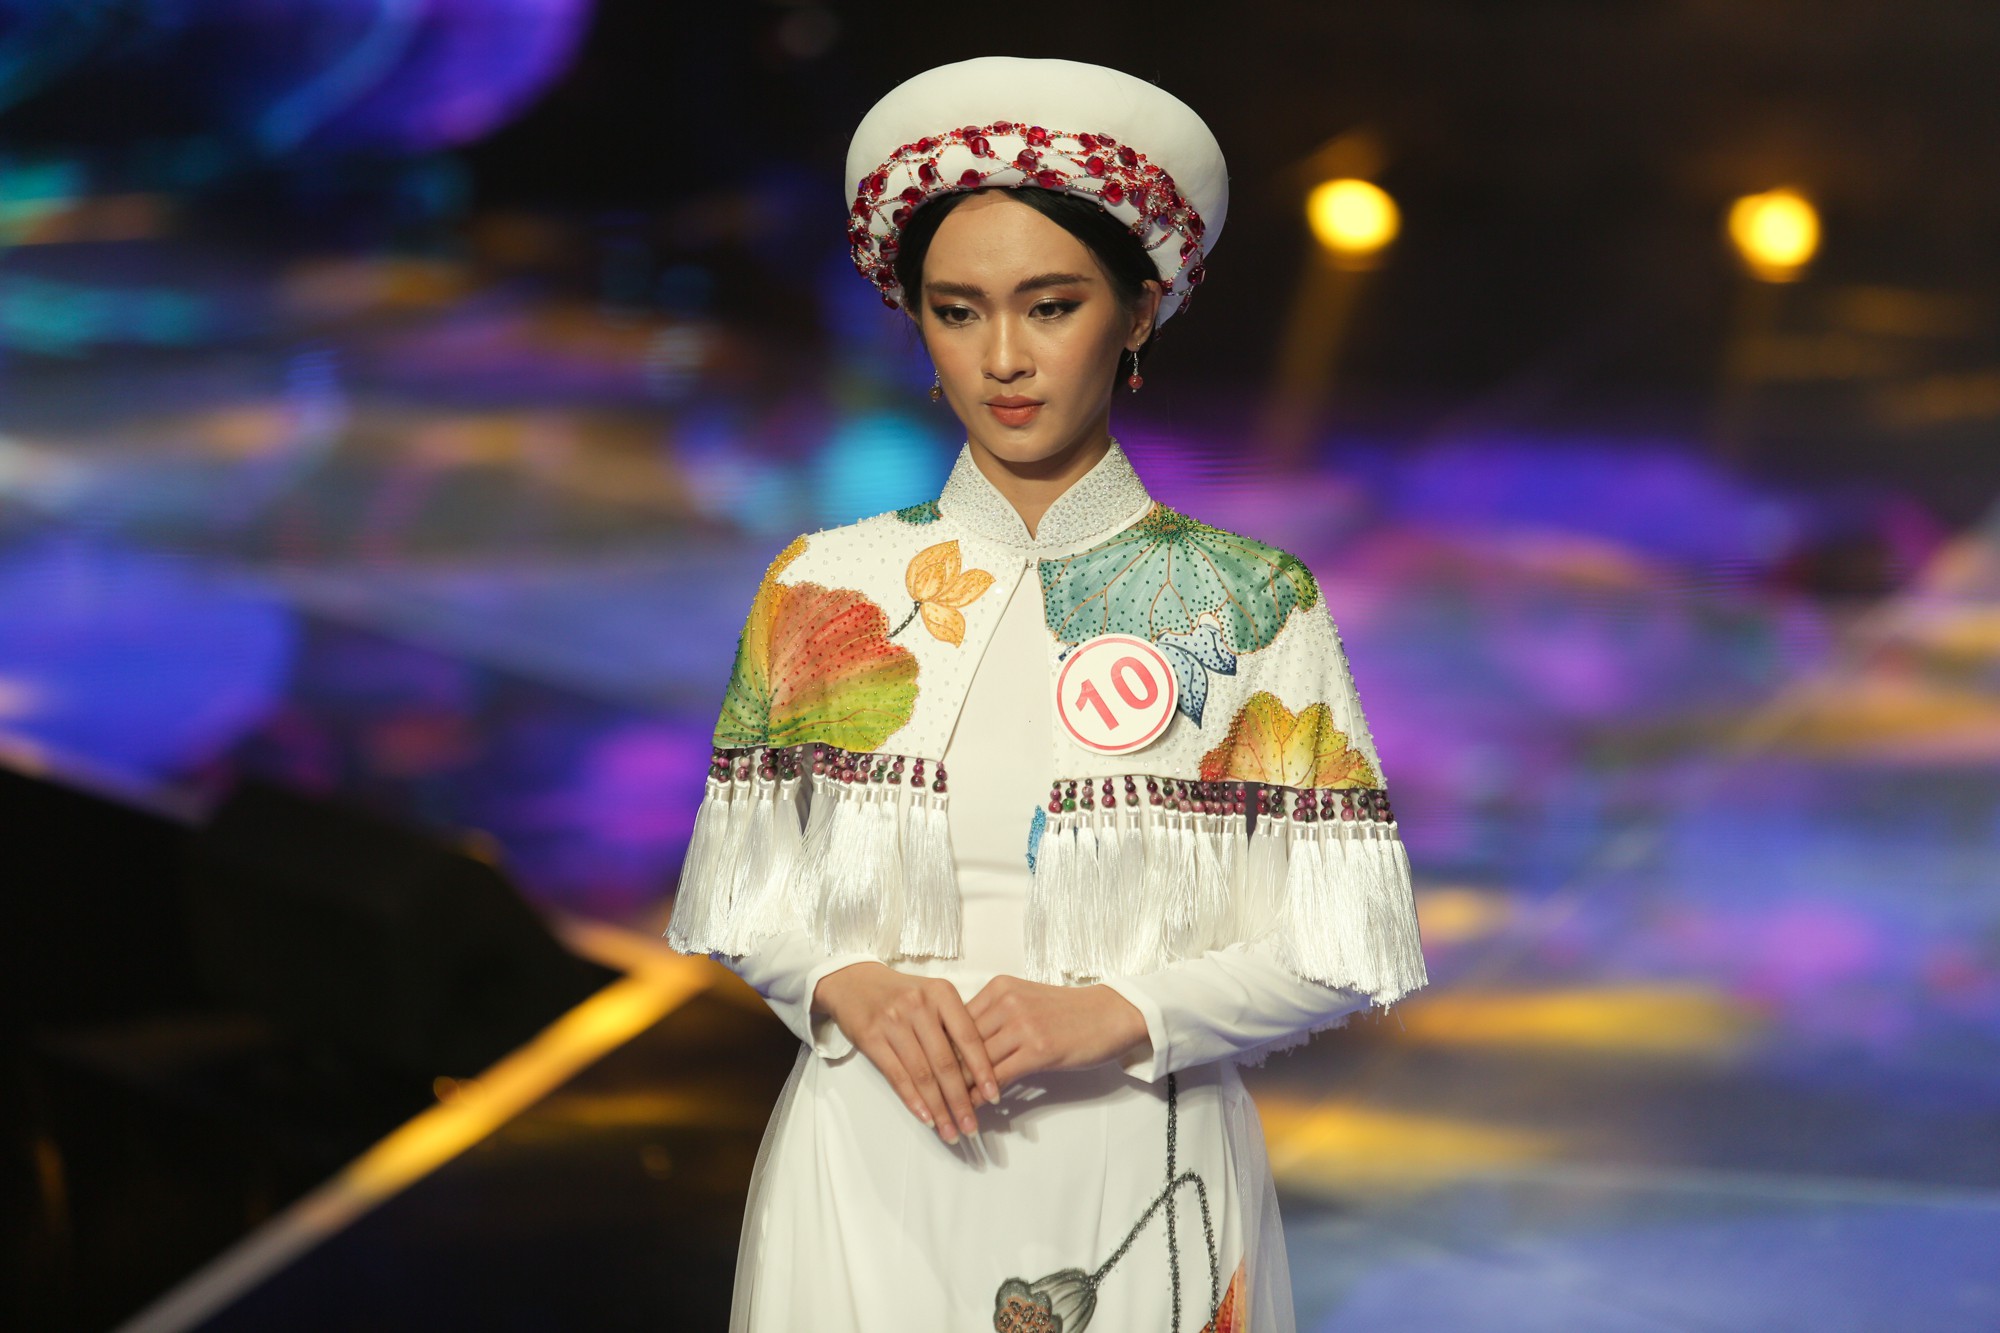 Siêu mẫu Việt Nam 2018 gọi tên học trò Hương Giang: Khán giả hoang mang vì không biết thi siêu mẫu hay thi Hoa hậu  - Ảnh 8.